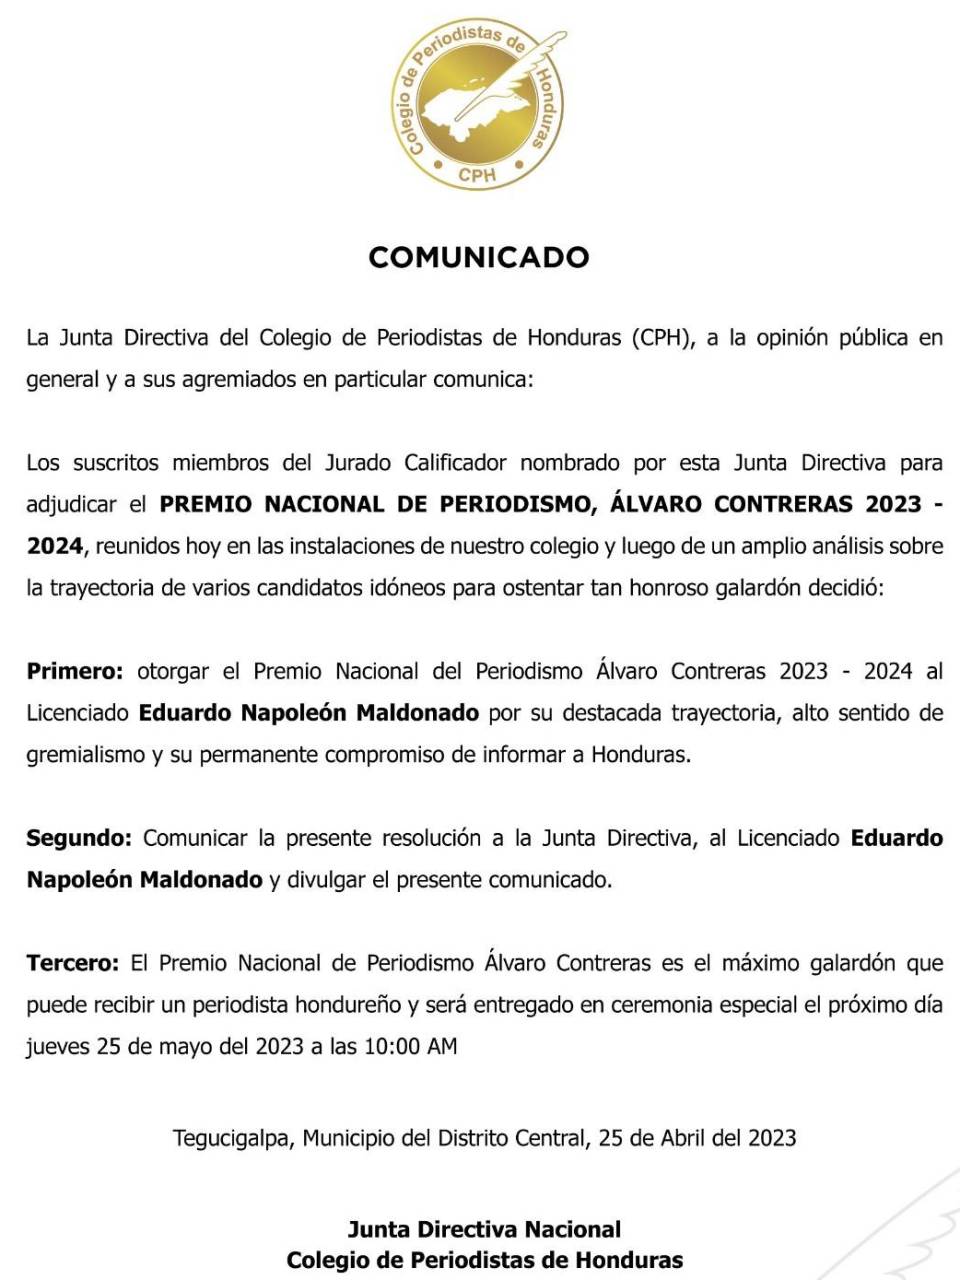 El comunicado emitido por el Colegio de Periodistas de Honduras.